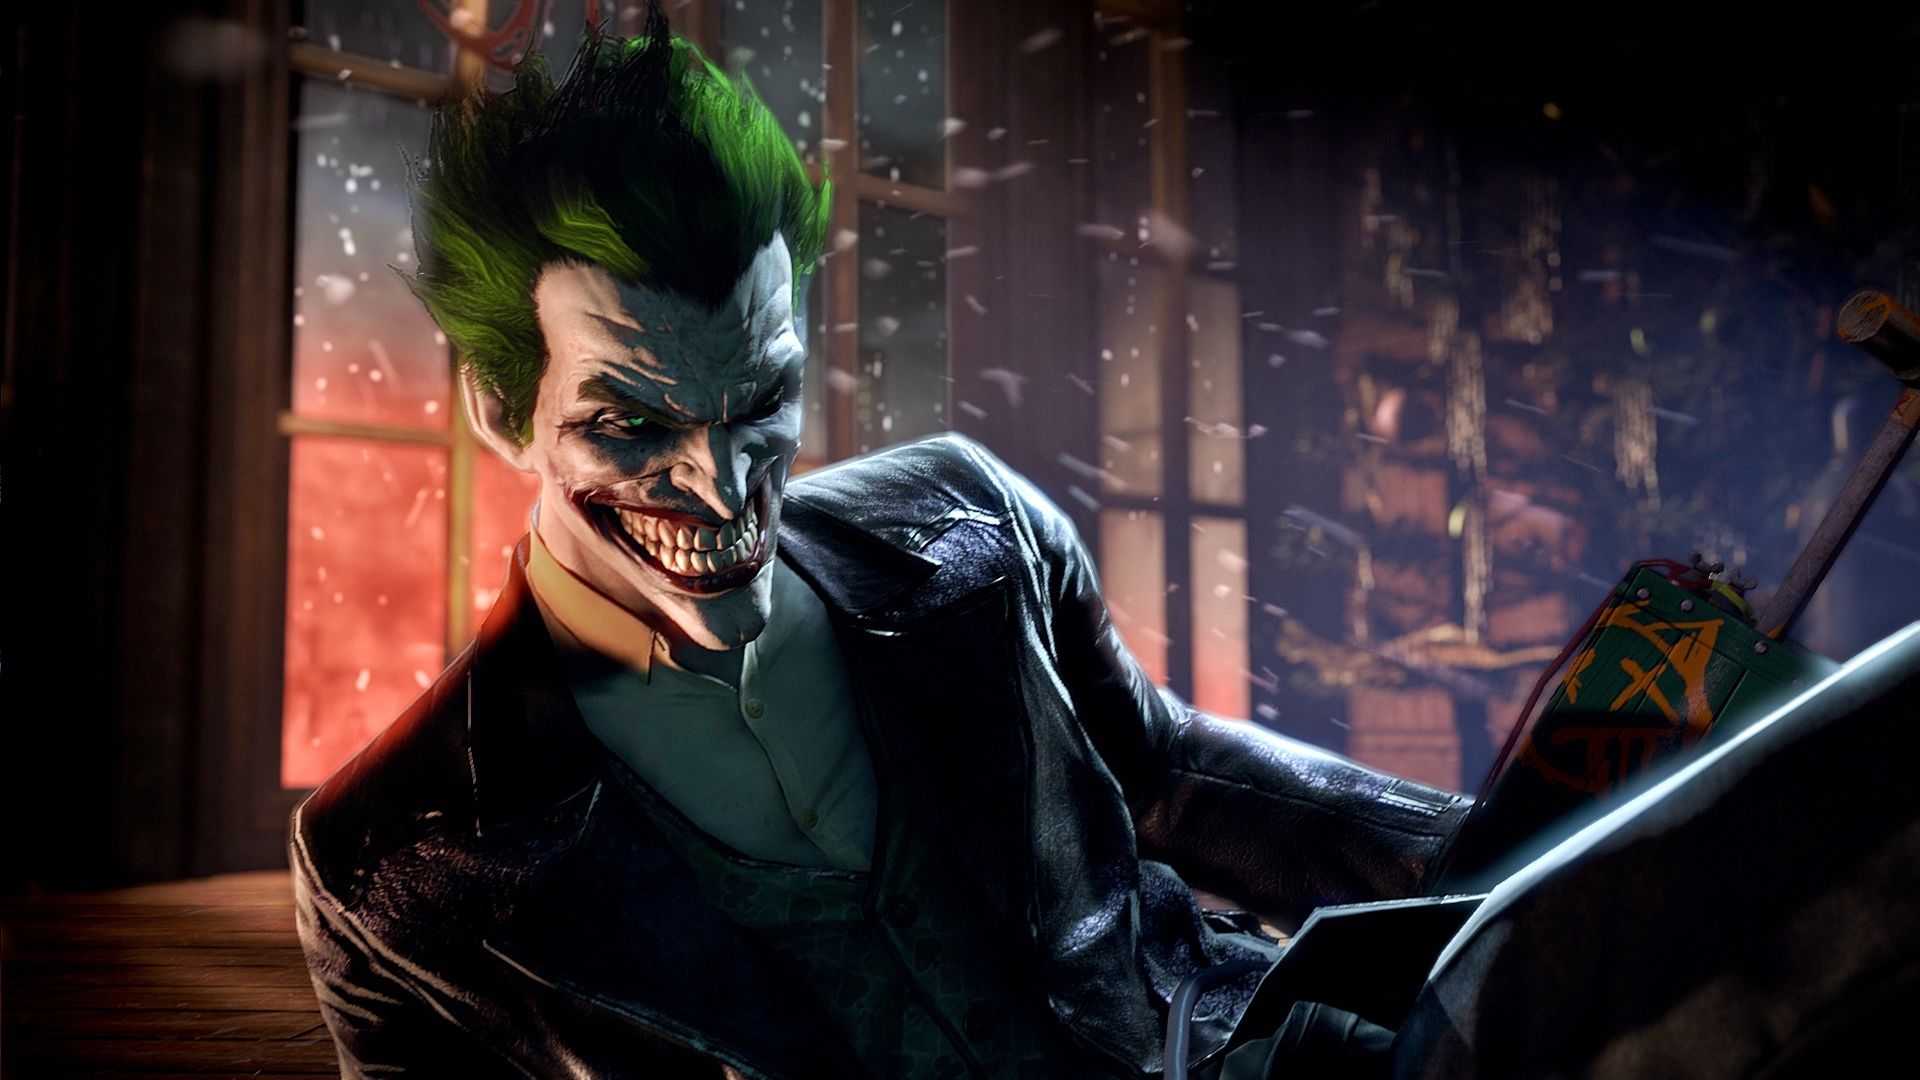 the Joker smiling in a menacing fashion